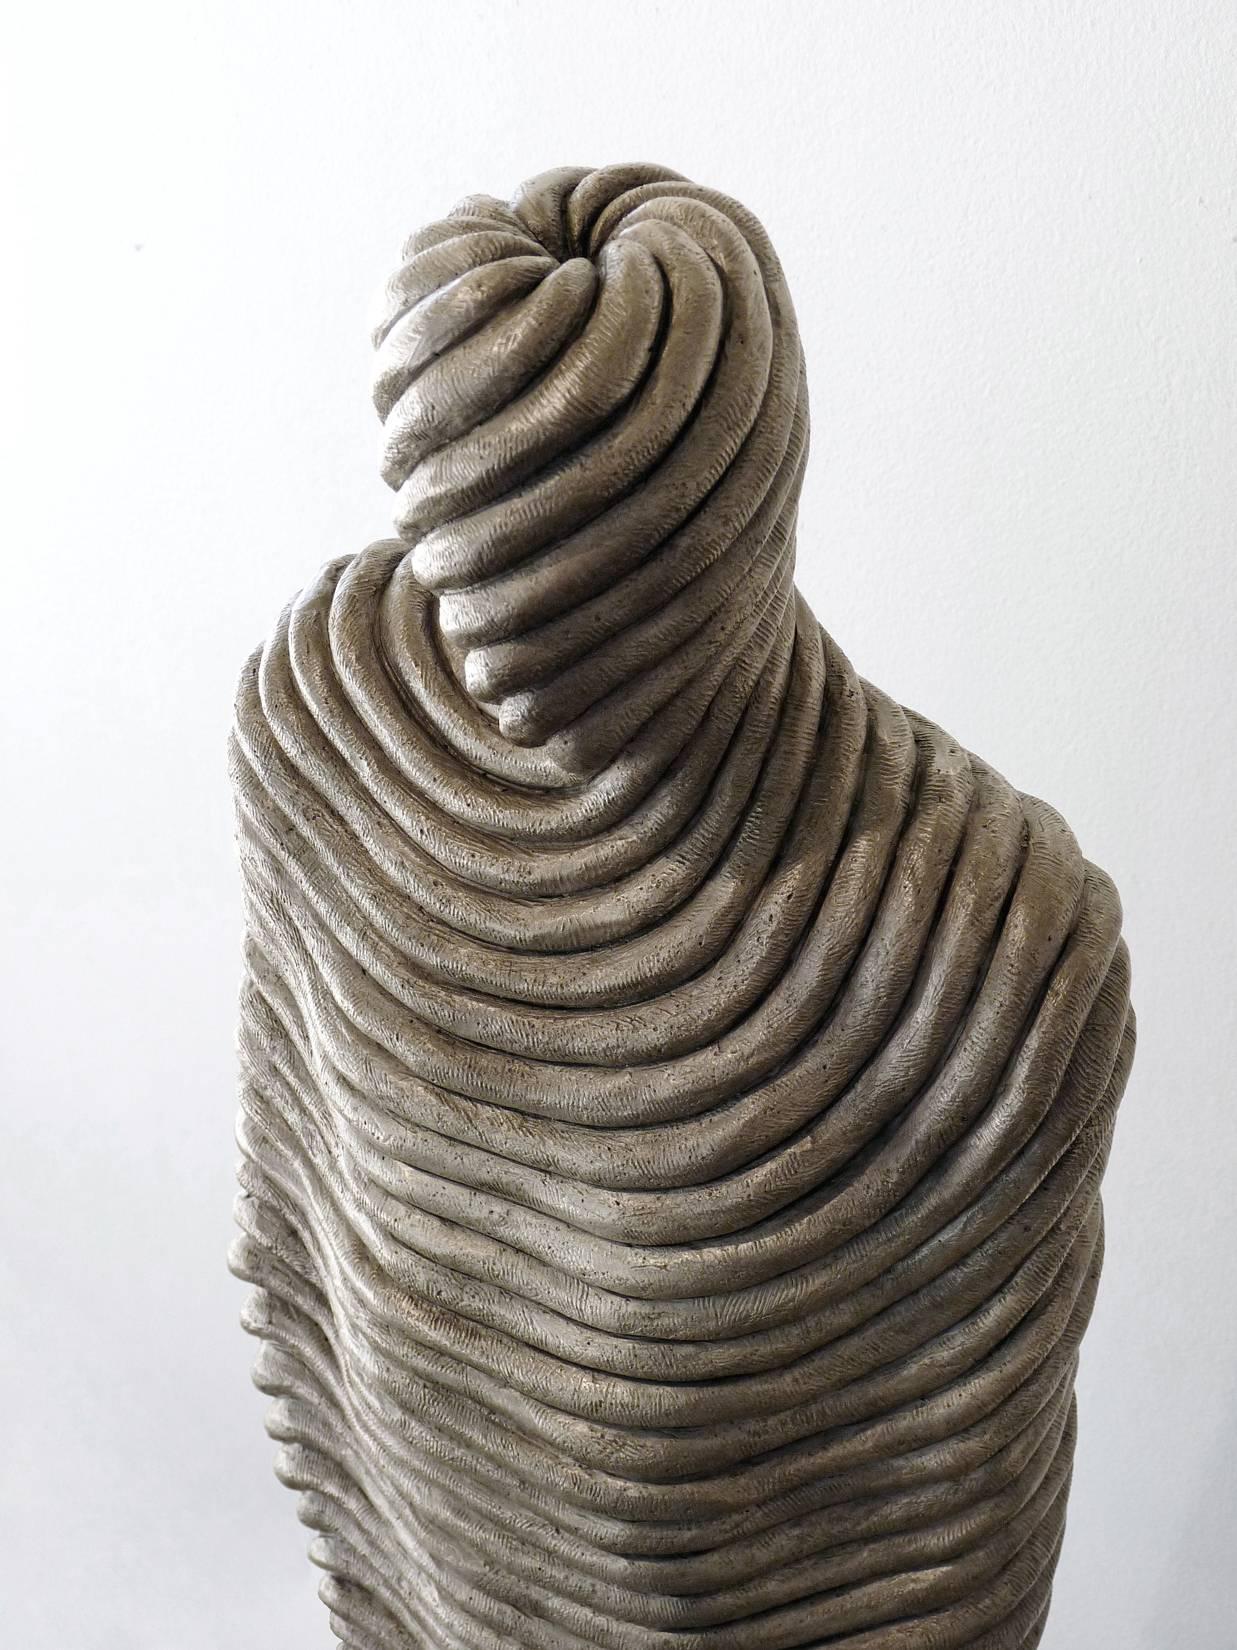 Cette sculpture figurative en bronze d'Emil Alzamora représente une figure masculine apparemment enveloppée de la tête aux pieds dans un matériau texturé ressemblant à une corde. 